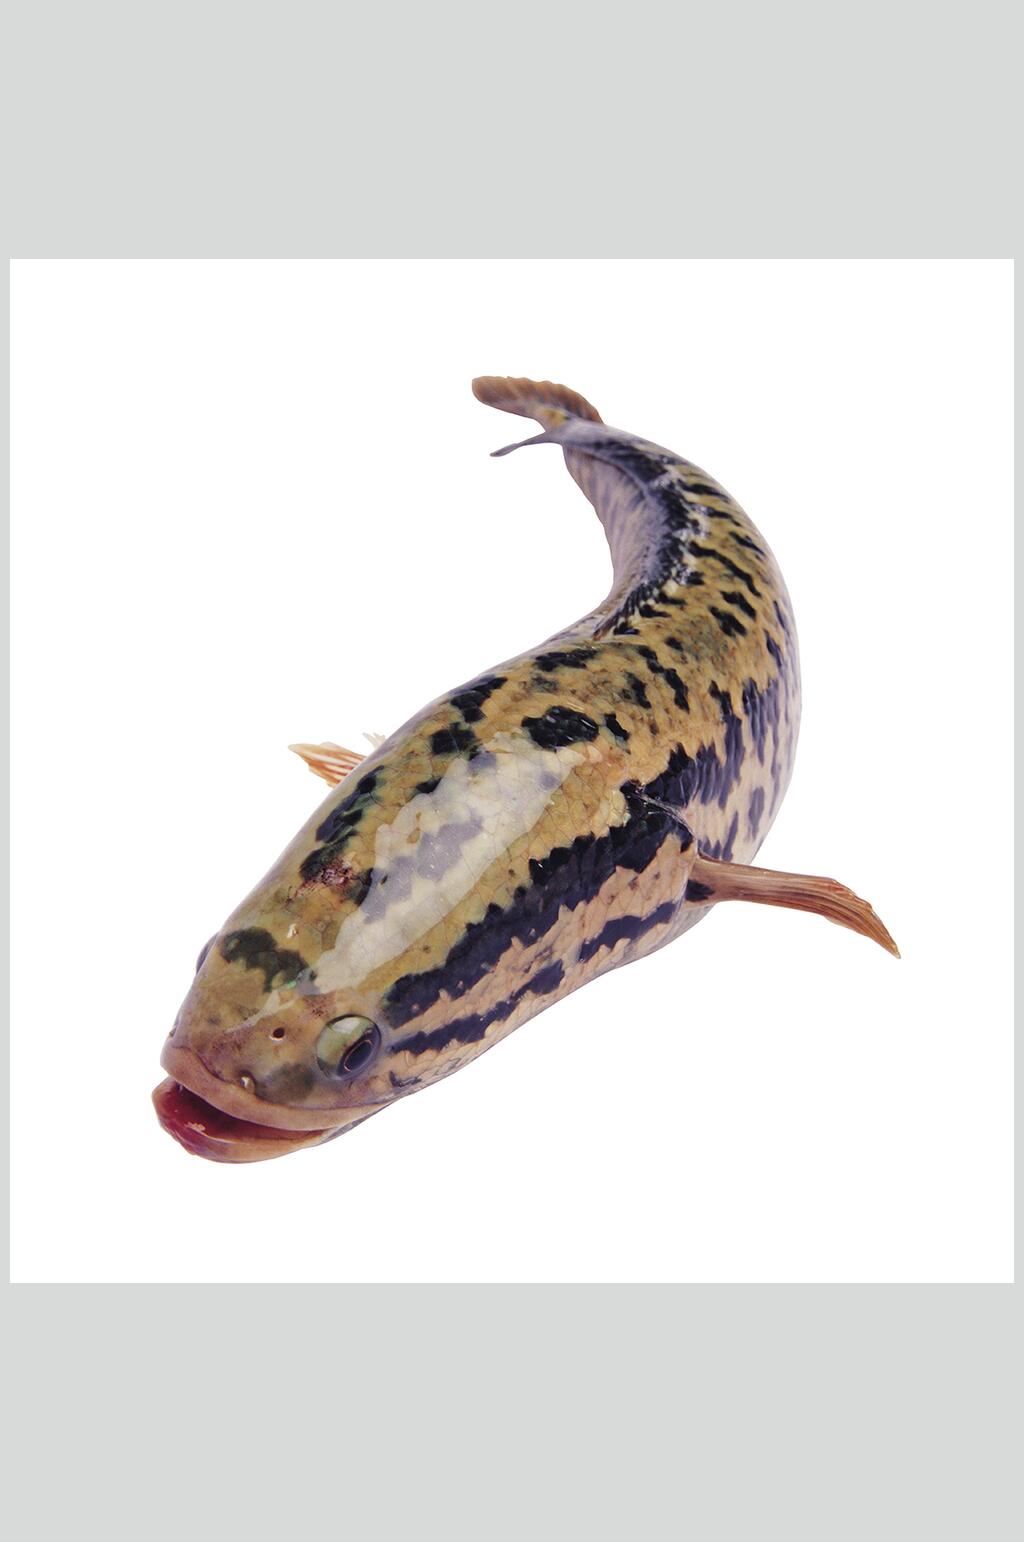 水产鱼类图片一只斑点鱼生鲜食材